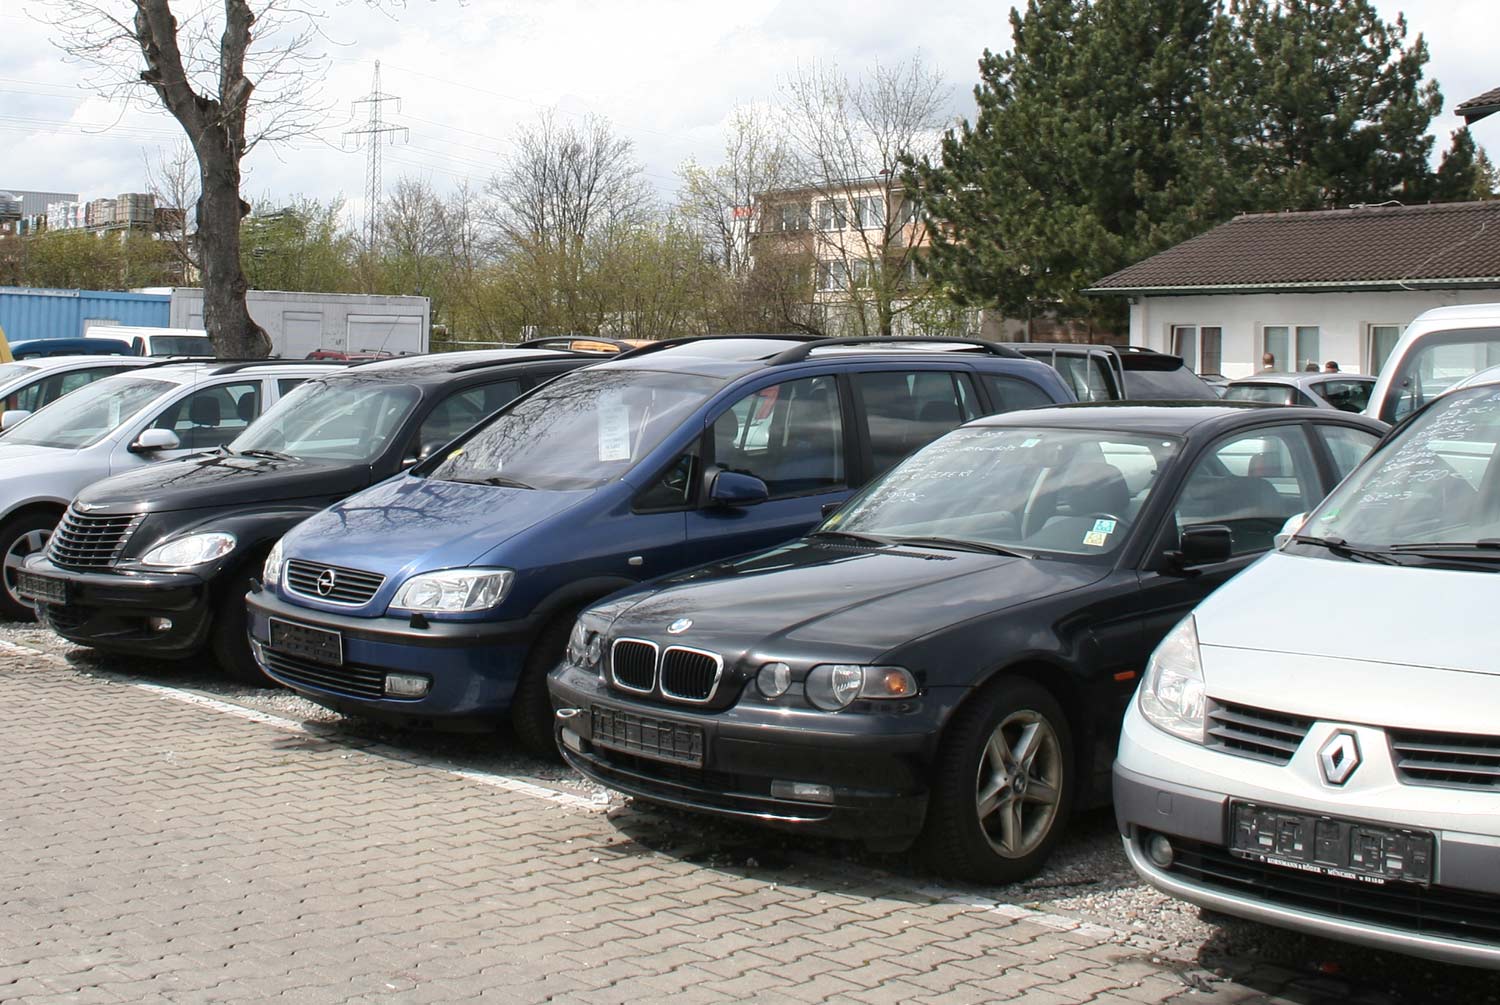 Használt autó Németországból: hogyan lehet leellenőrizni? 5